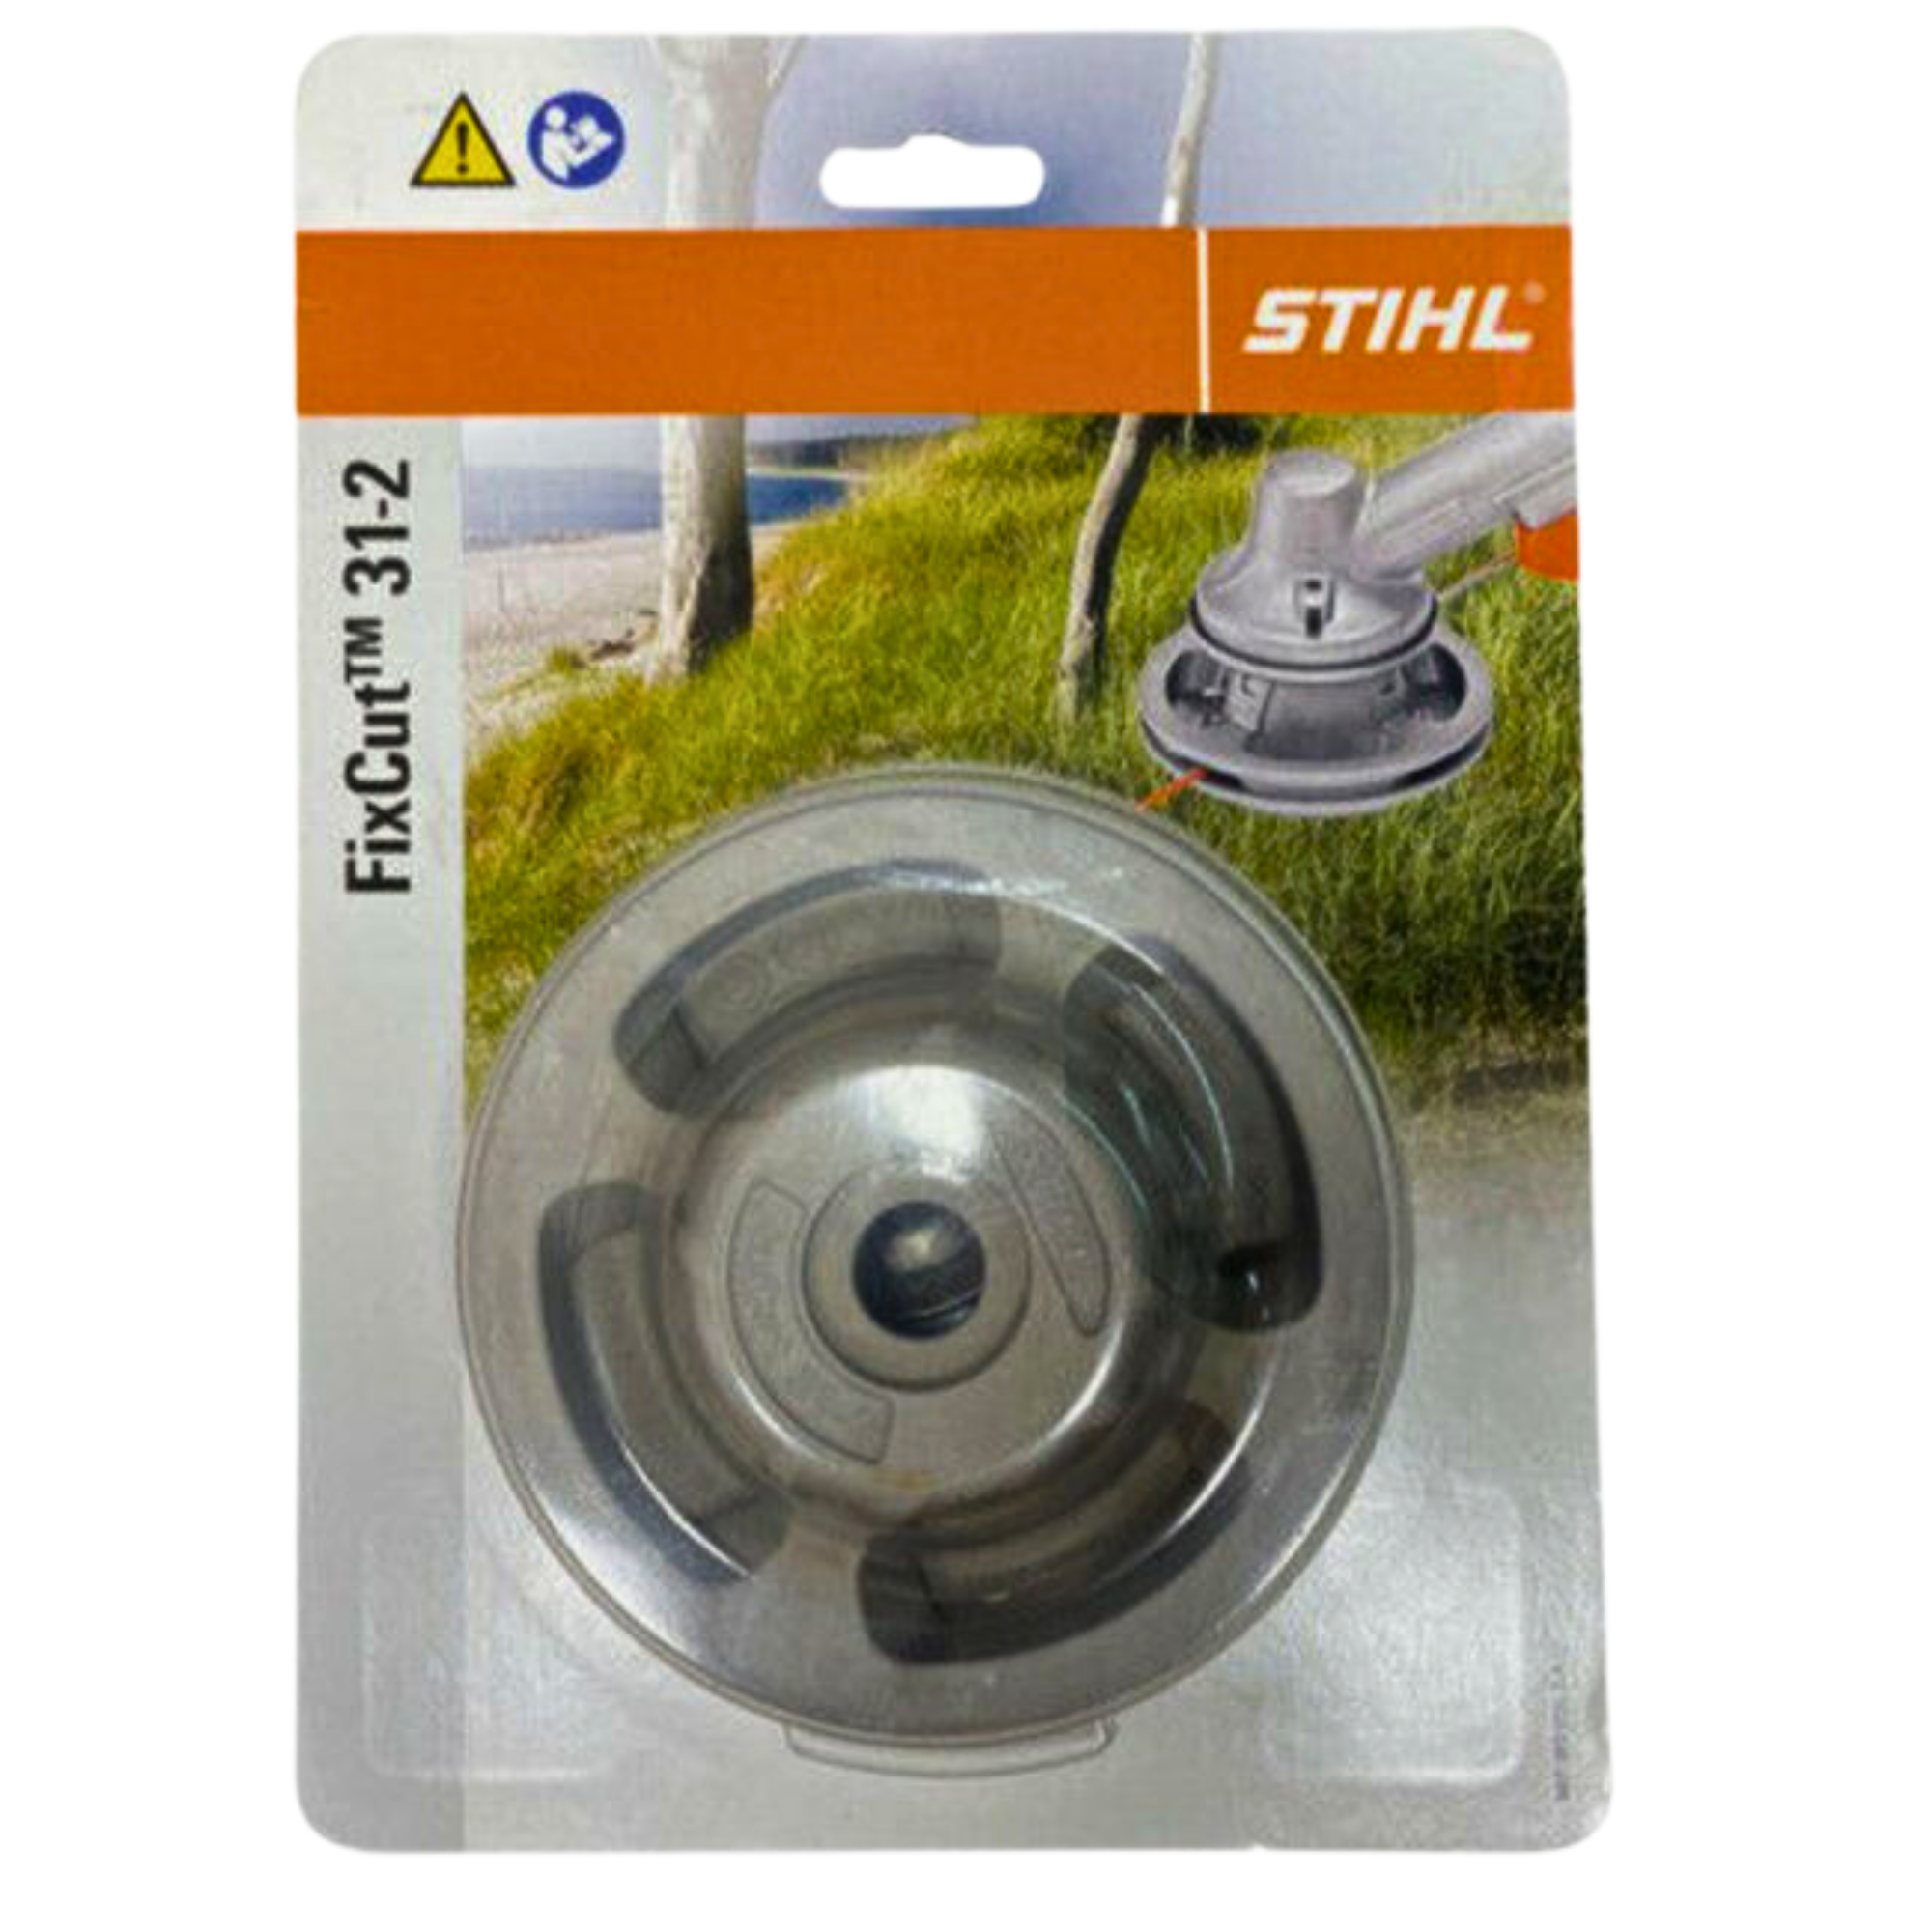 STIHL FixCut 31-2 Trimmer Head | 4001 710 2105